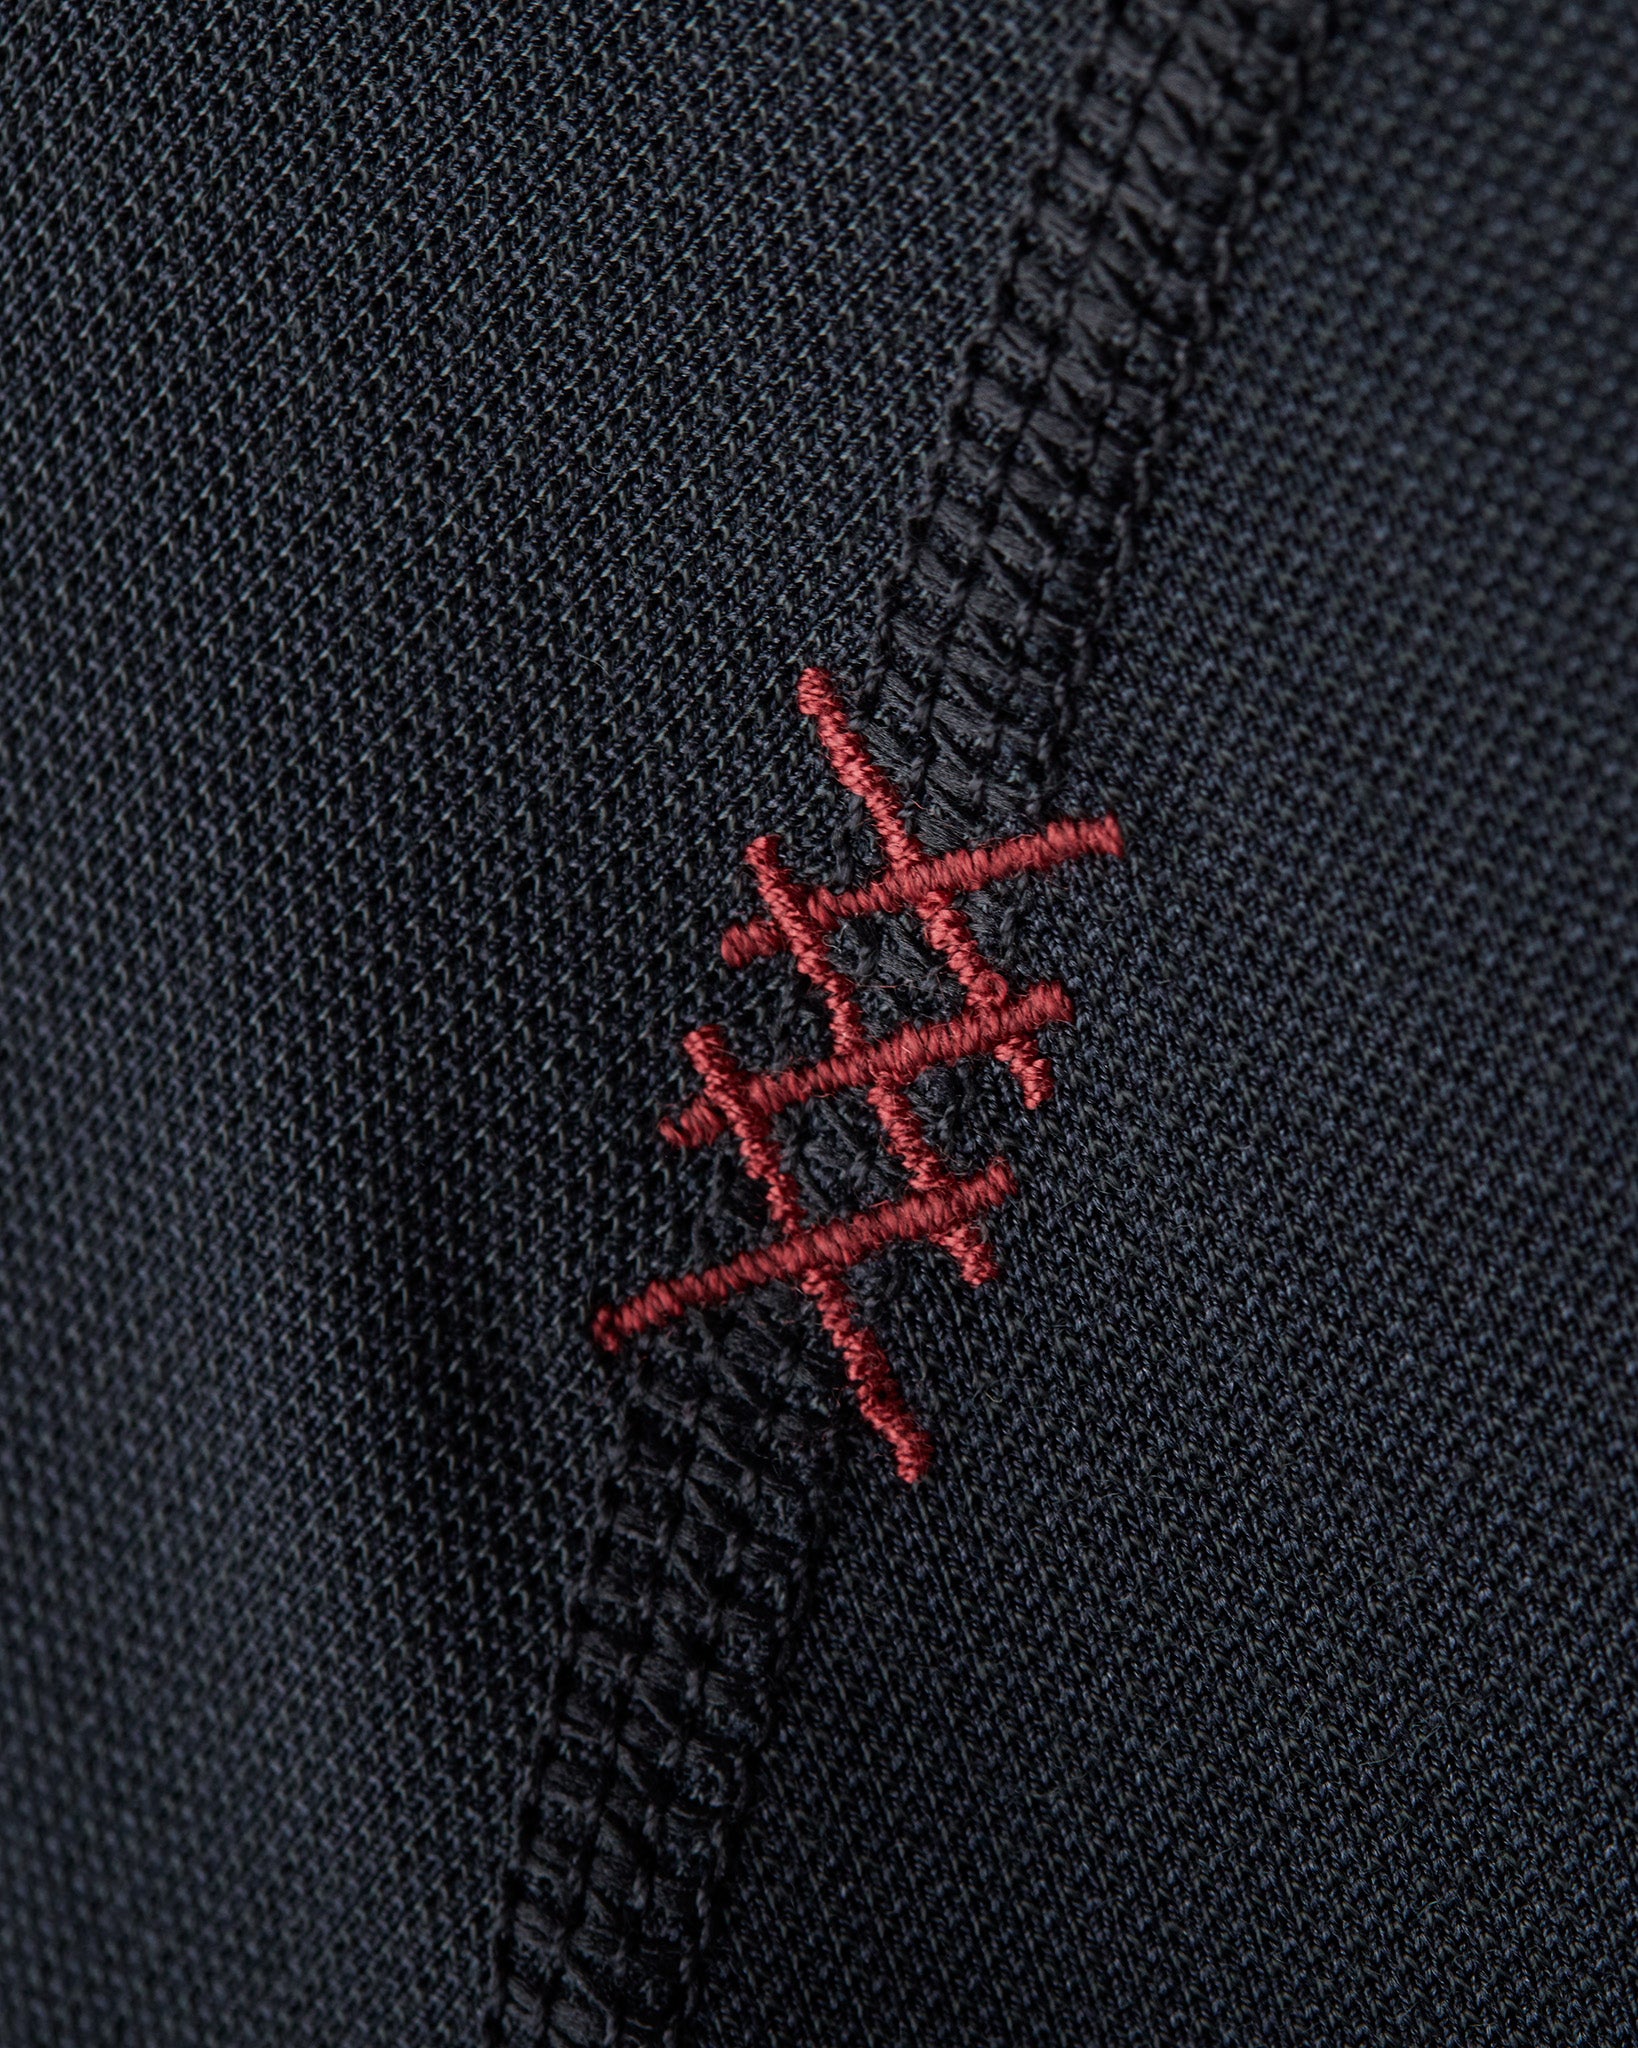 Delta Pique Long Sleeve Polo | Rhone Apparel